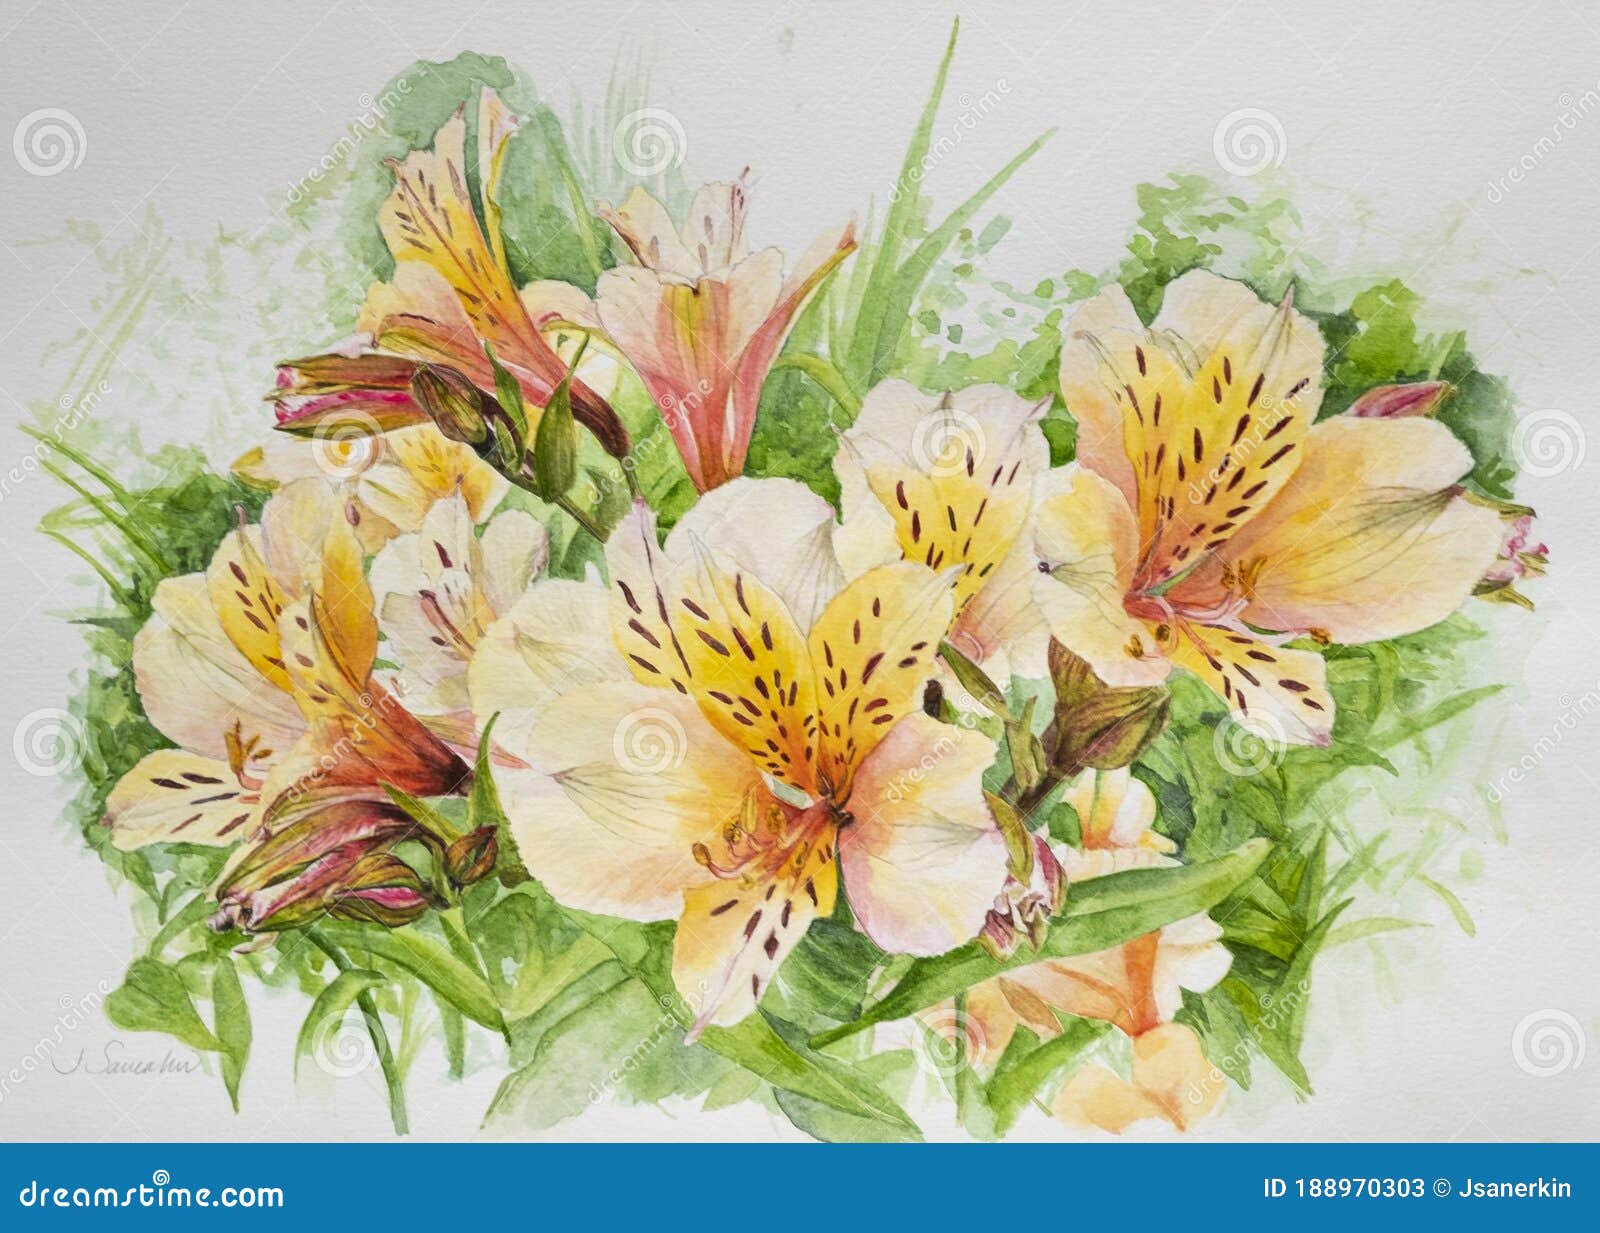 Flores De Alstroemeria Amarela E Laranja, Aquarela Imagem de Stock - Imagem  de planta, folha: 188970303